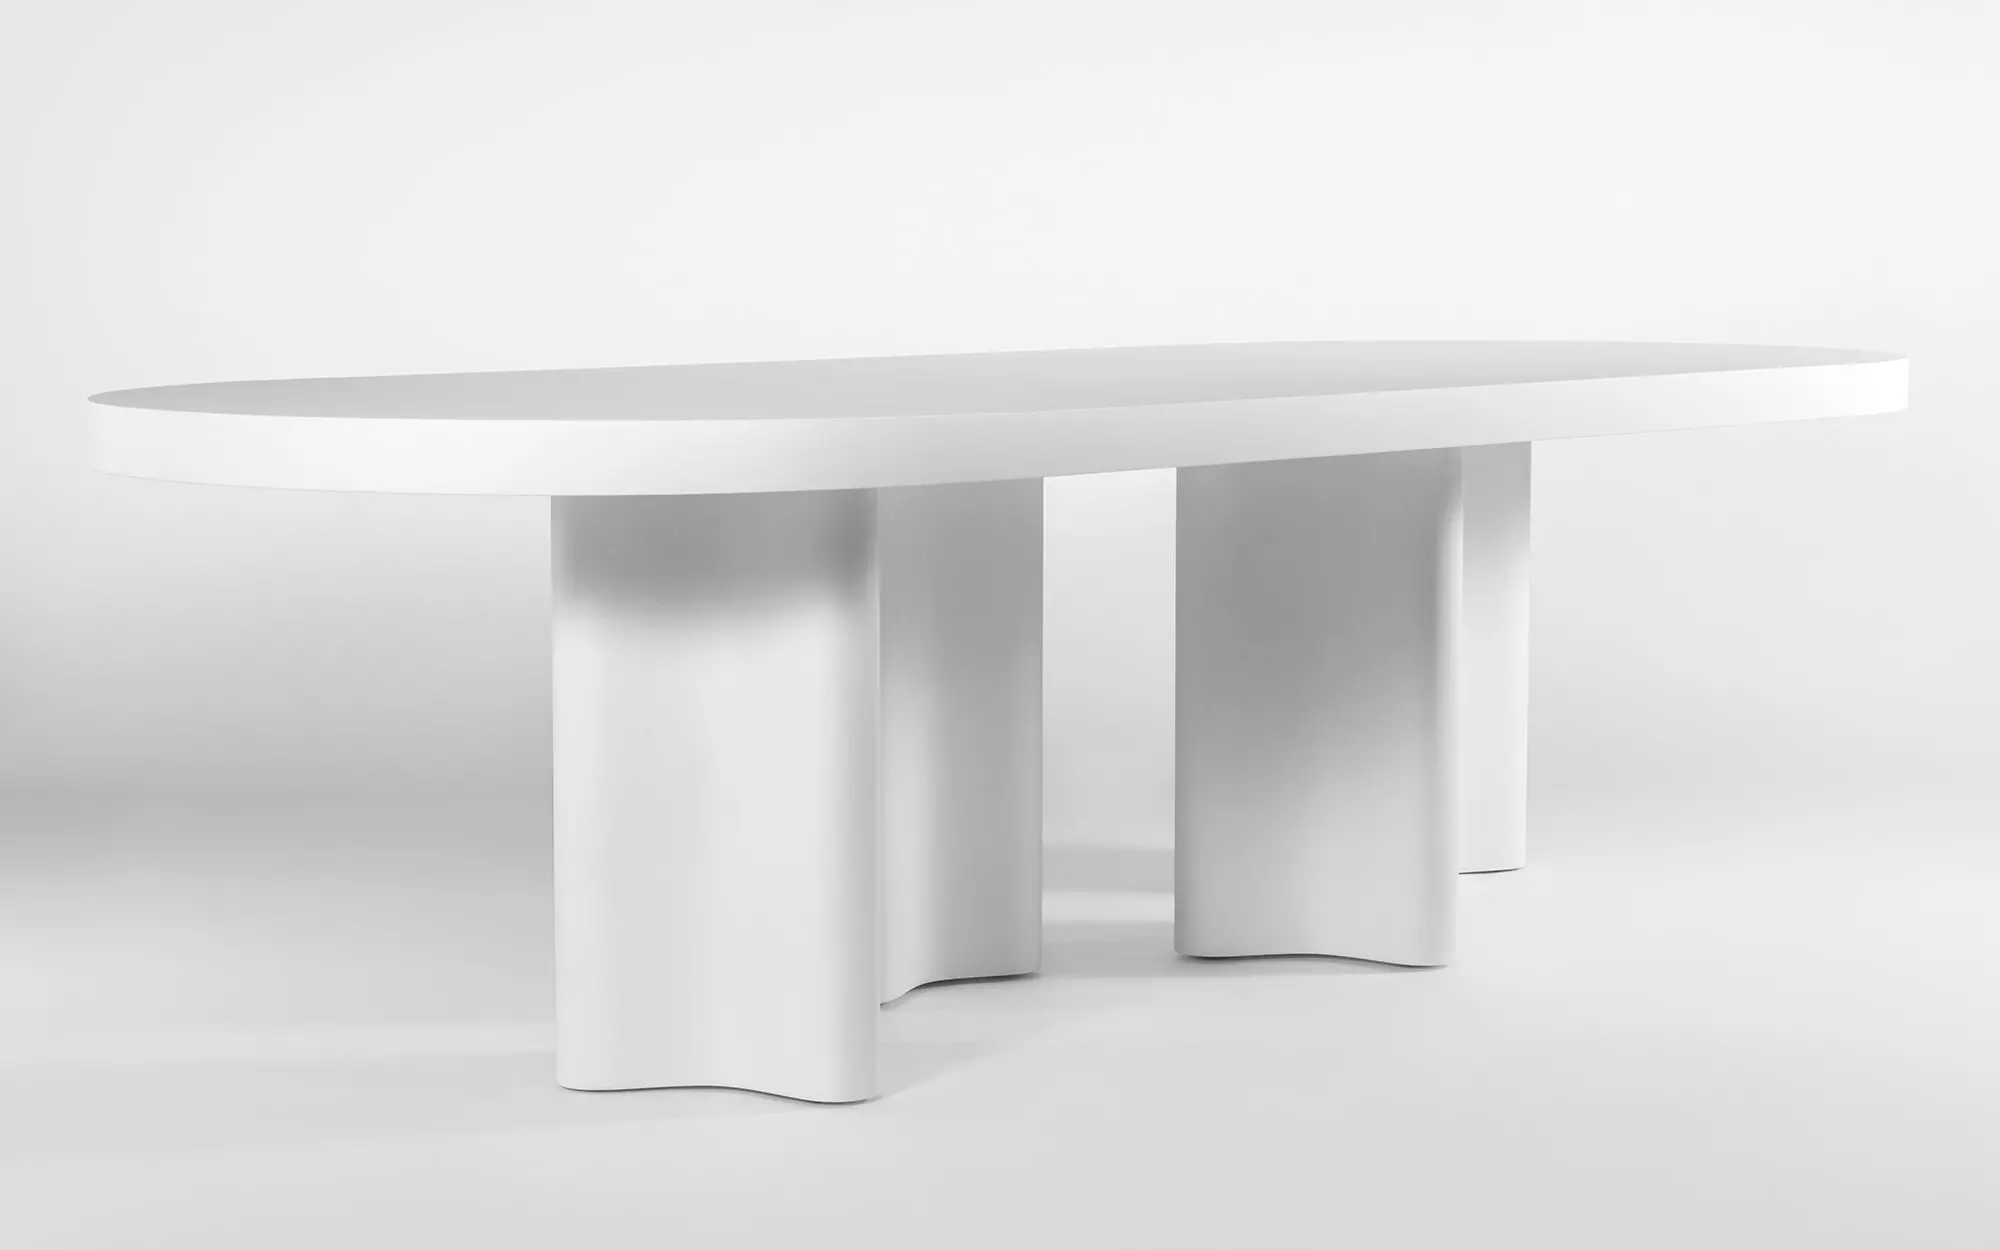 Azo oval table - François Bauchet - Bench - Galerie kreo